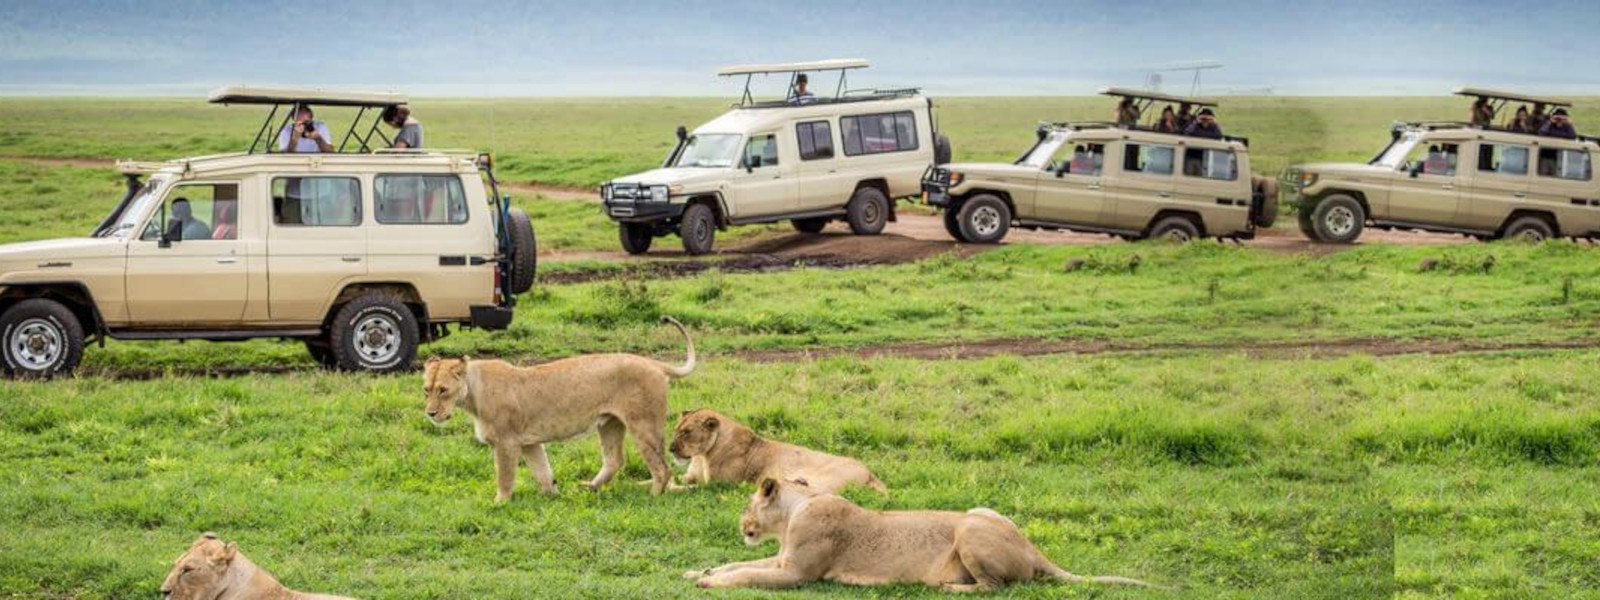 Safari Vehicle Hire in Tanzania